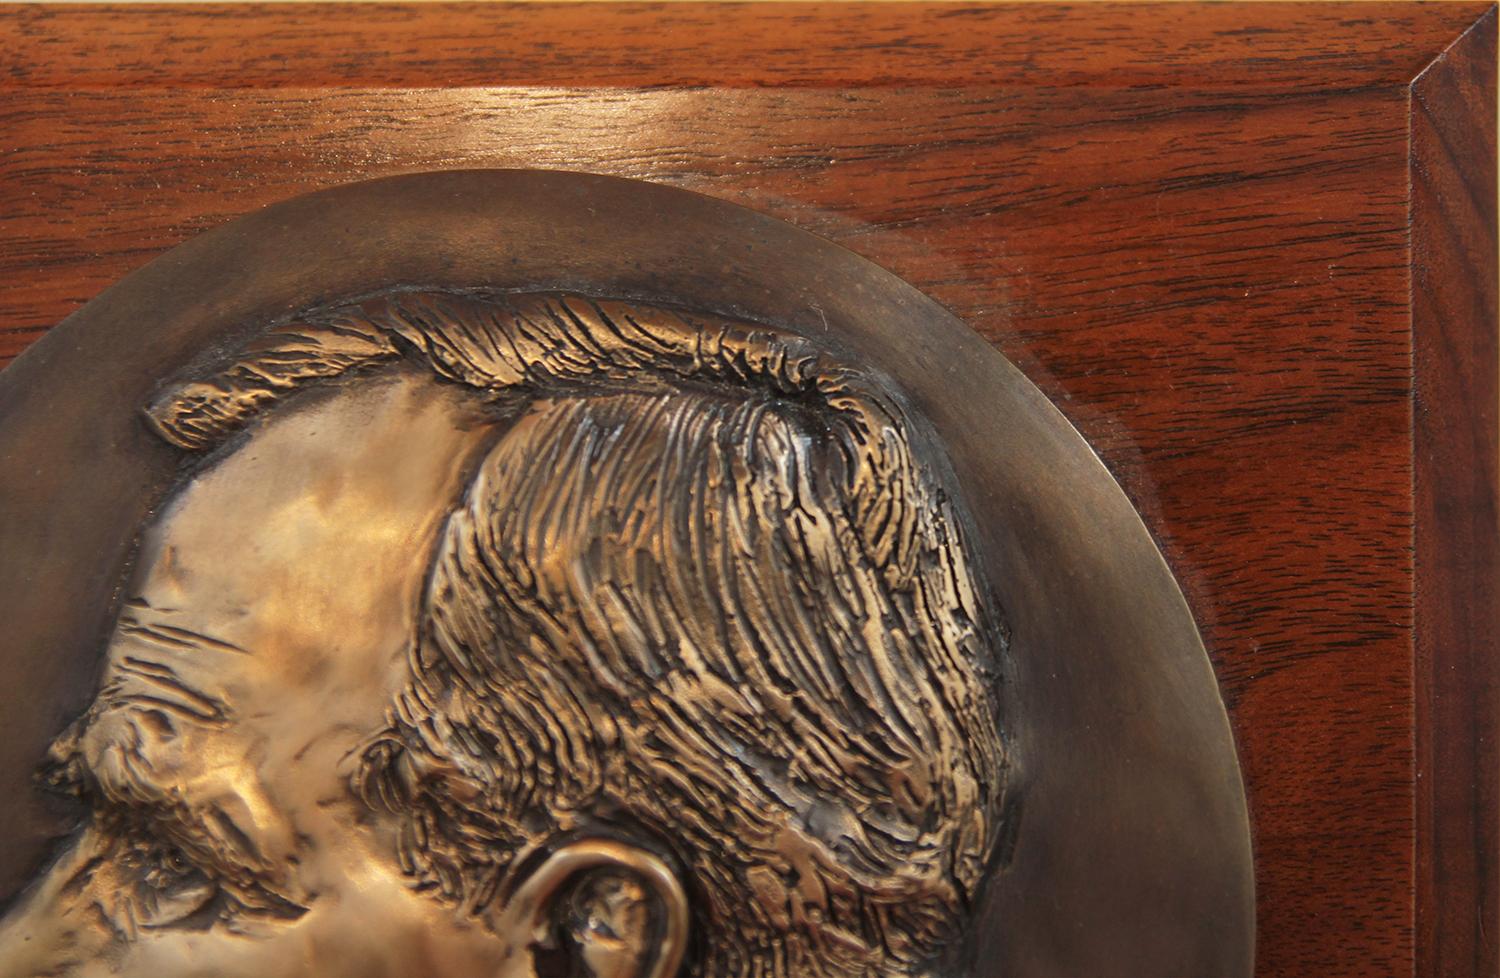 Metallskulptur auf Holz des modernistischen Bildhauers und Malers David Adickes aus Houston, Texas. Hochreliefskulptur von George Bush, nach rechts blickend, in Metall gegossen und auf Holz montiert. Signiert vom Künstler.

Metall-Skulptur